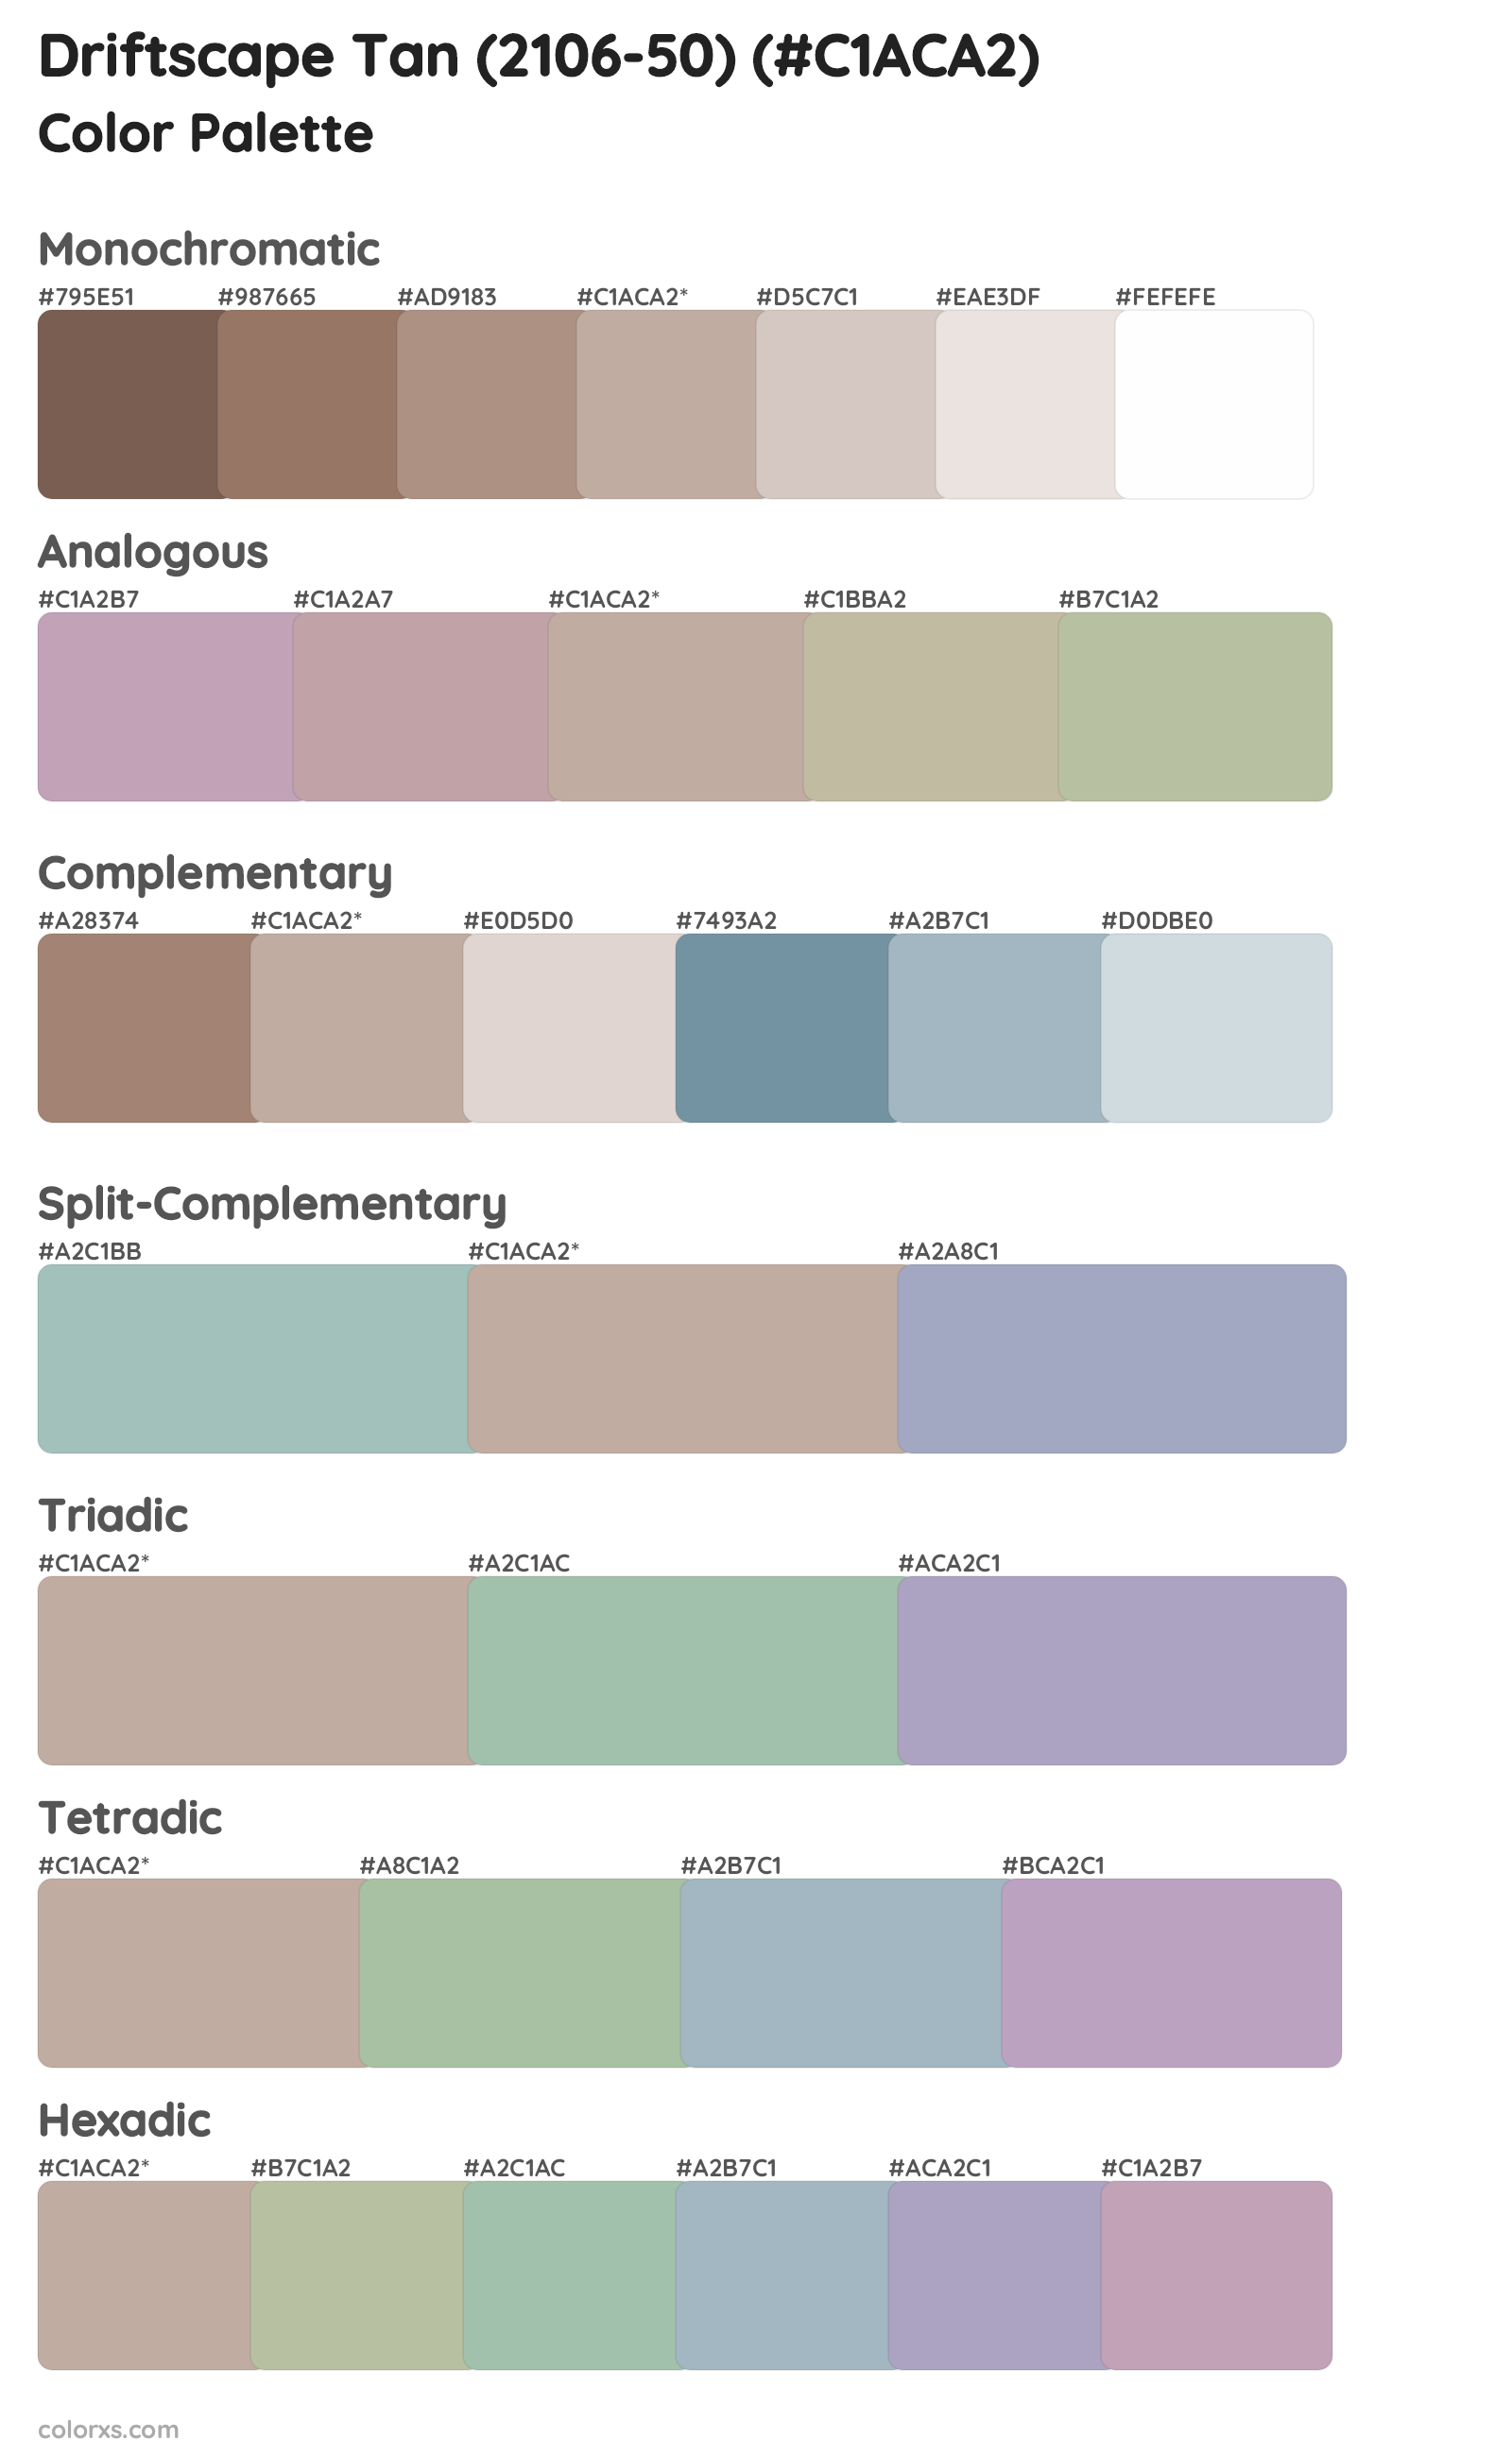 Driftscape Tan (2106-50) Color Scheme Palettes